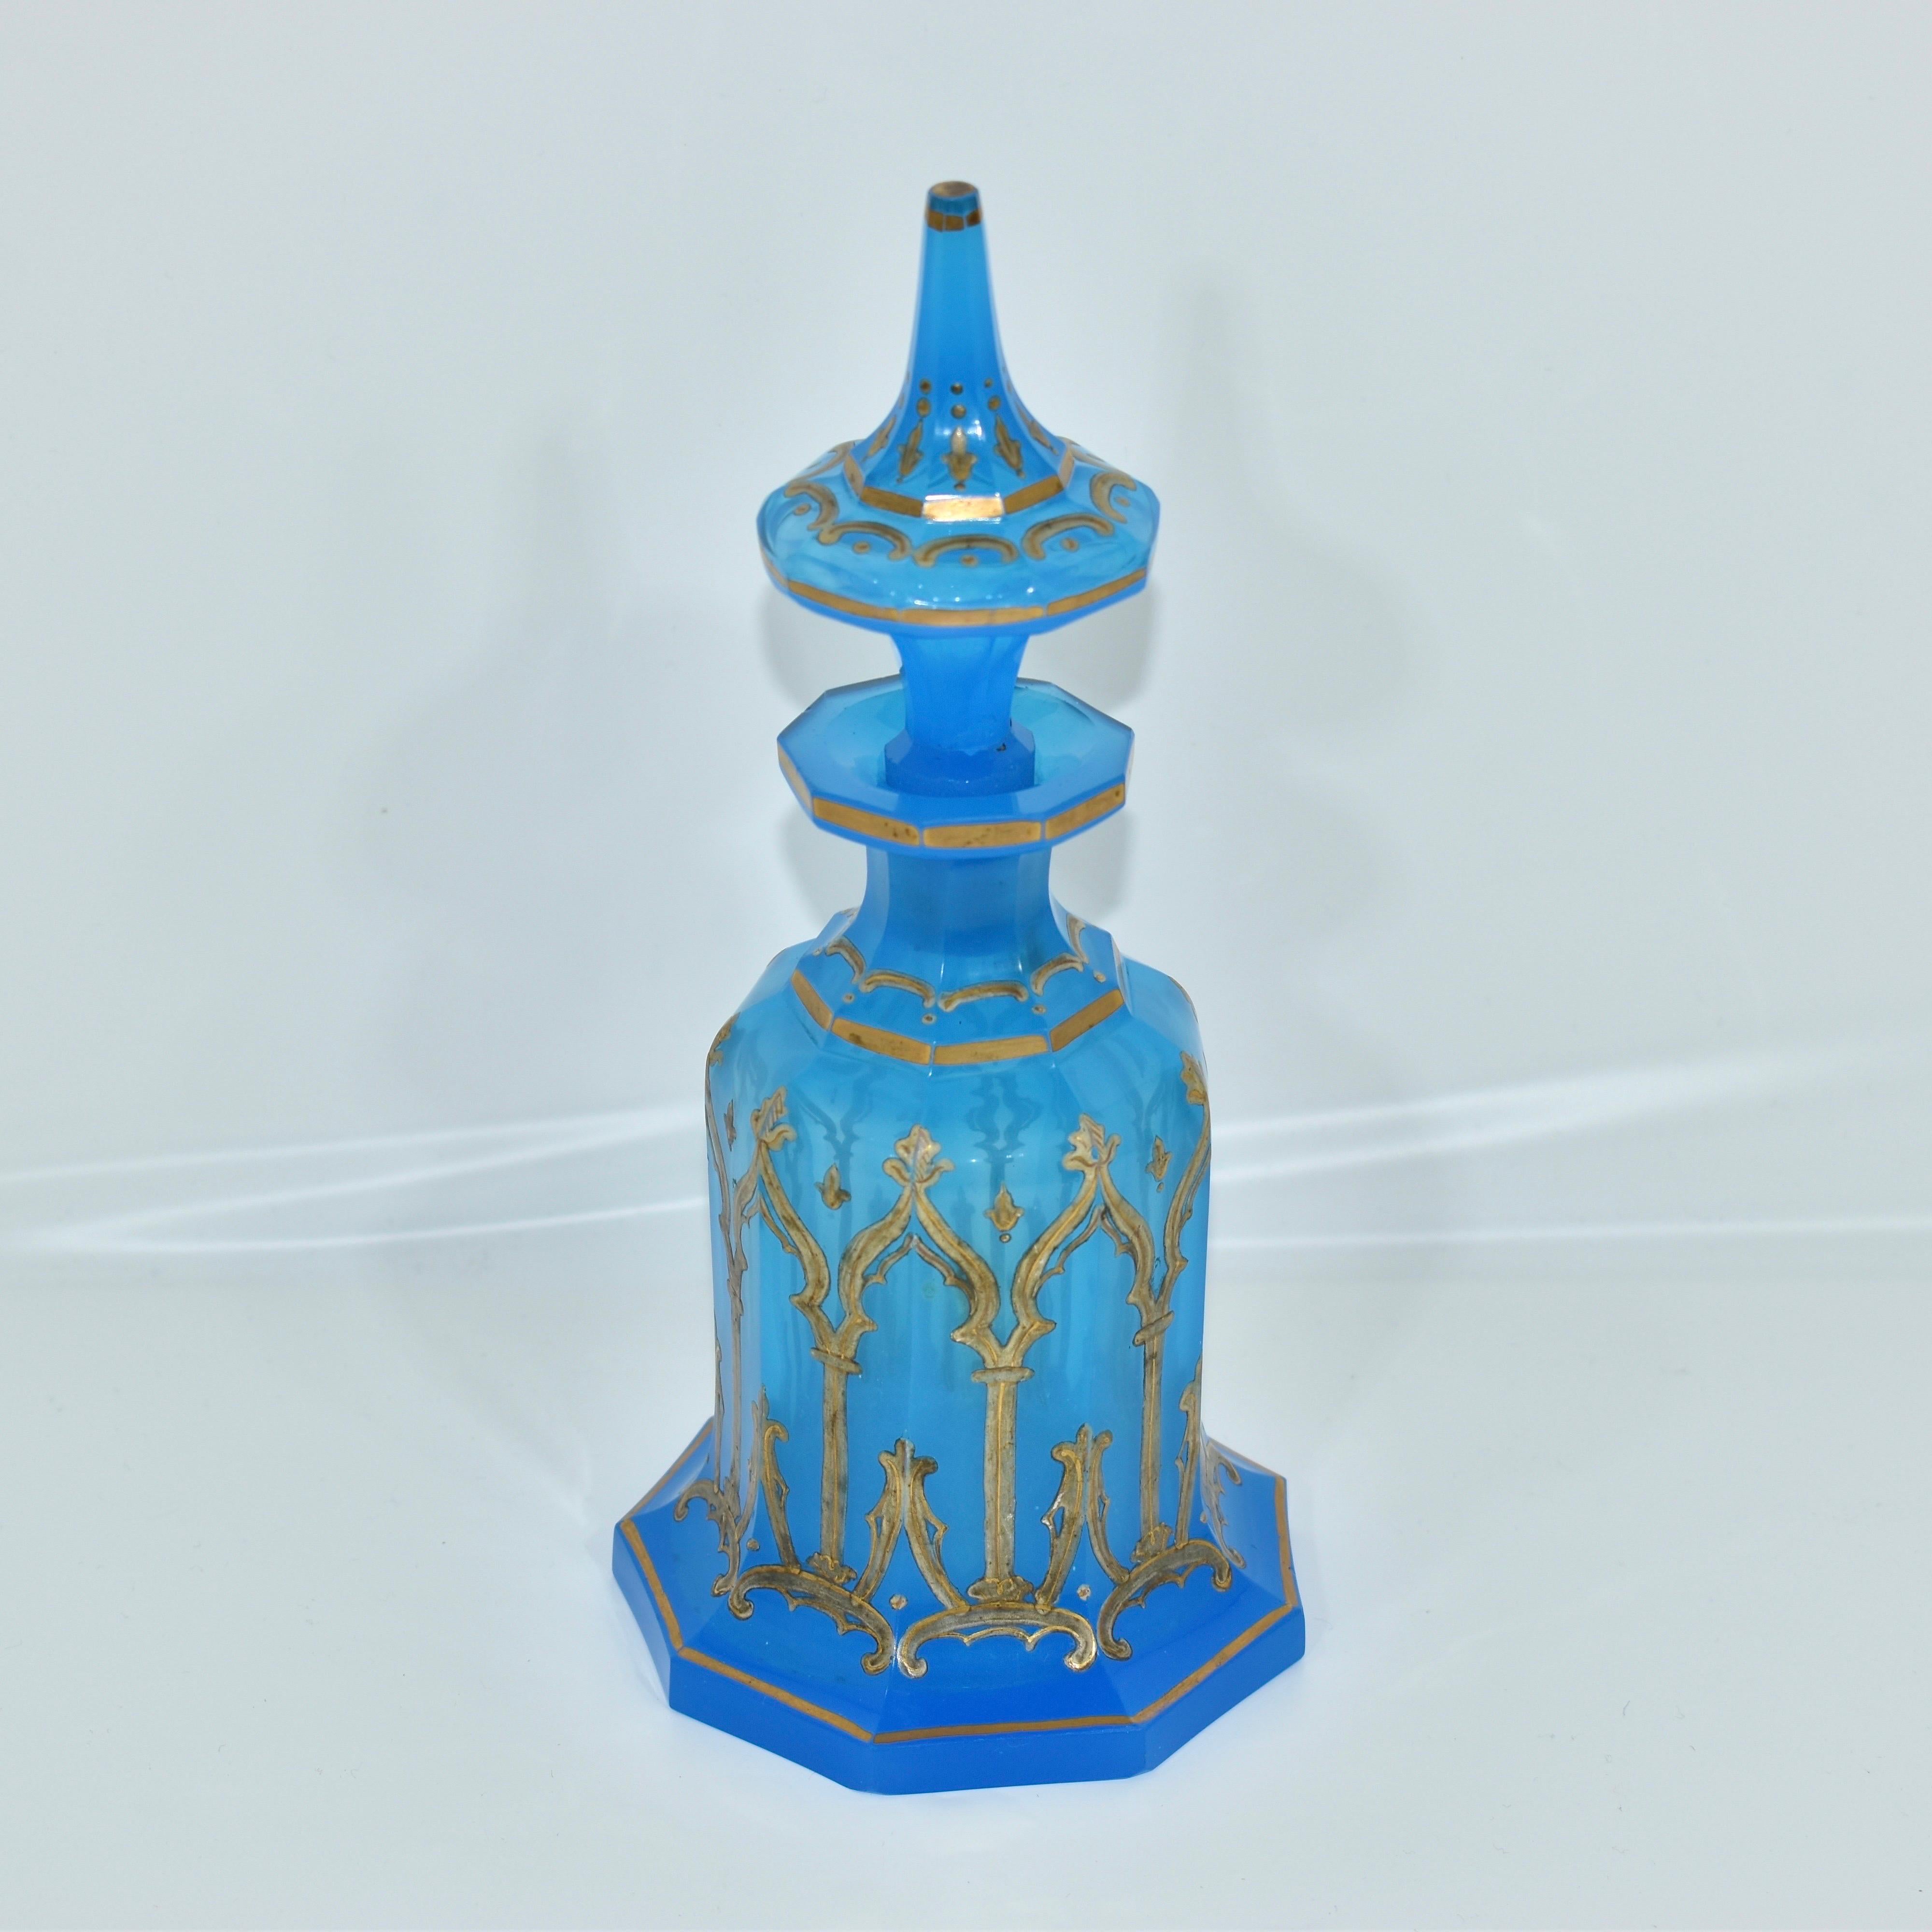 Bouteille de parfum ancienne en opaline, flacon avec bouchon

Verre opalin bleu avec décoration en émail doré

Bohemia, XIXe siècle, période Napoléon III